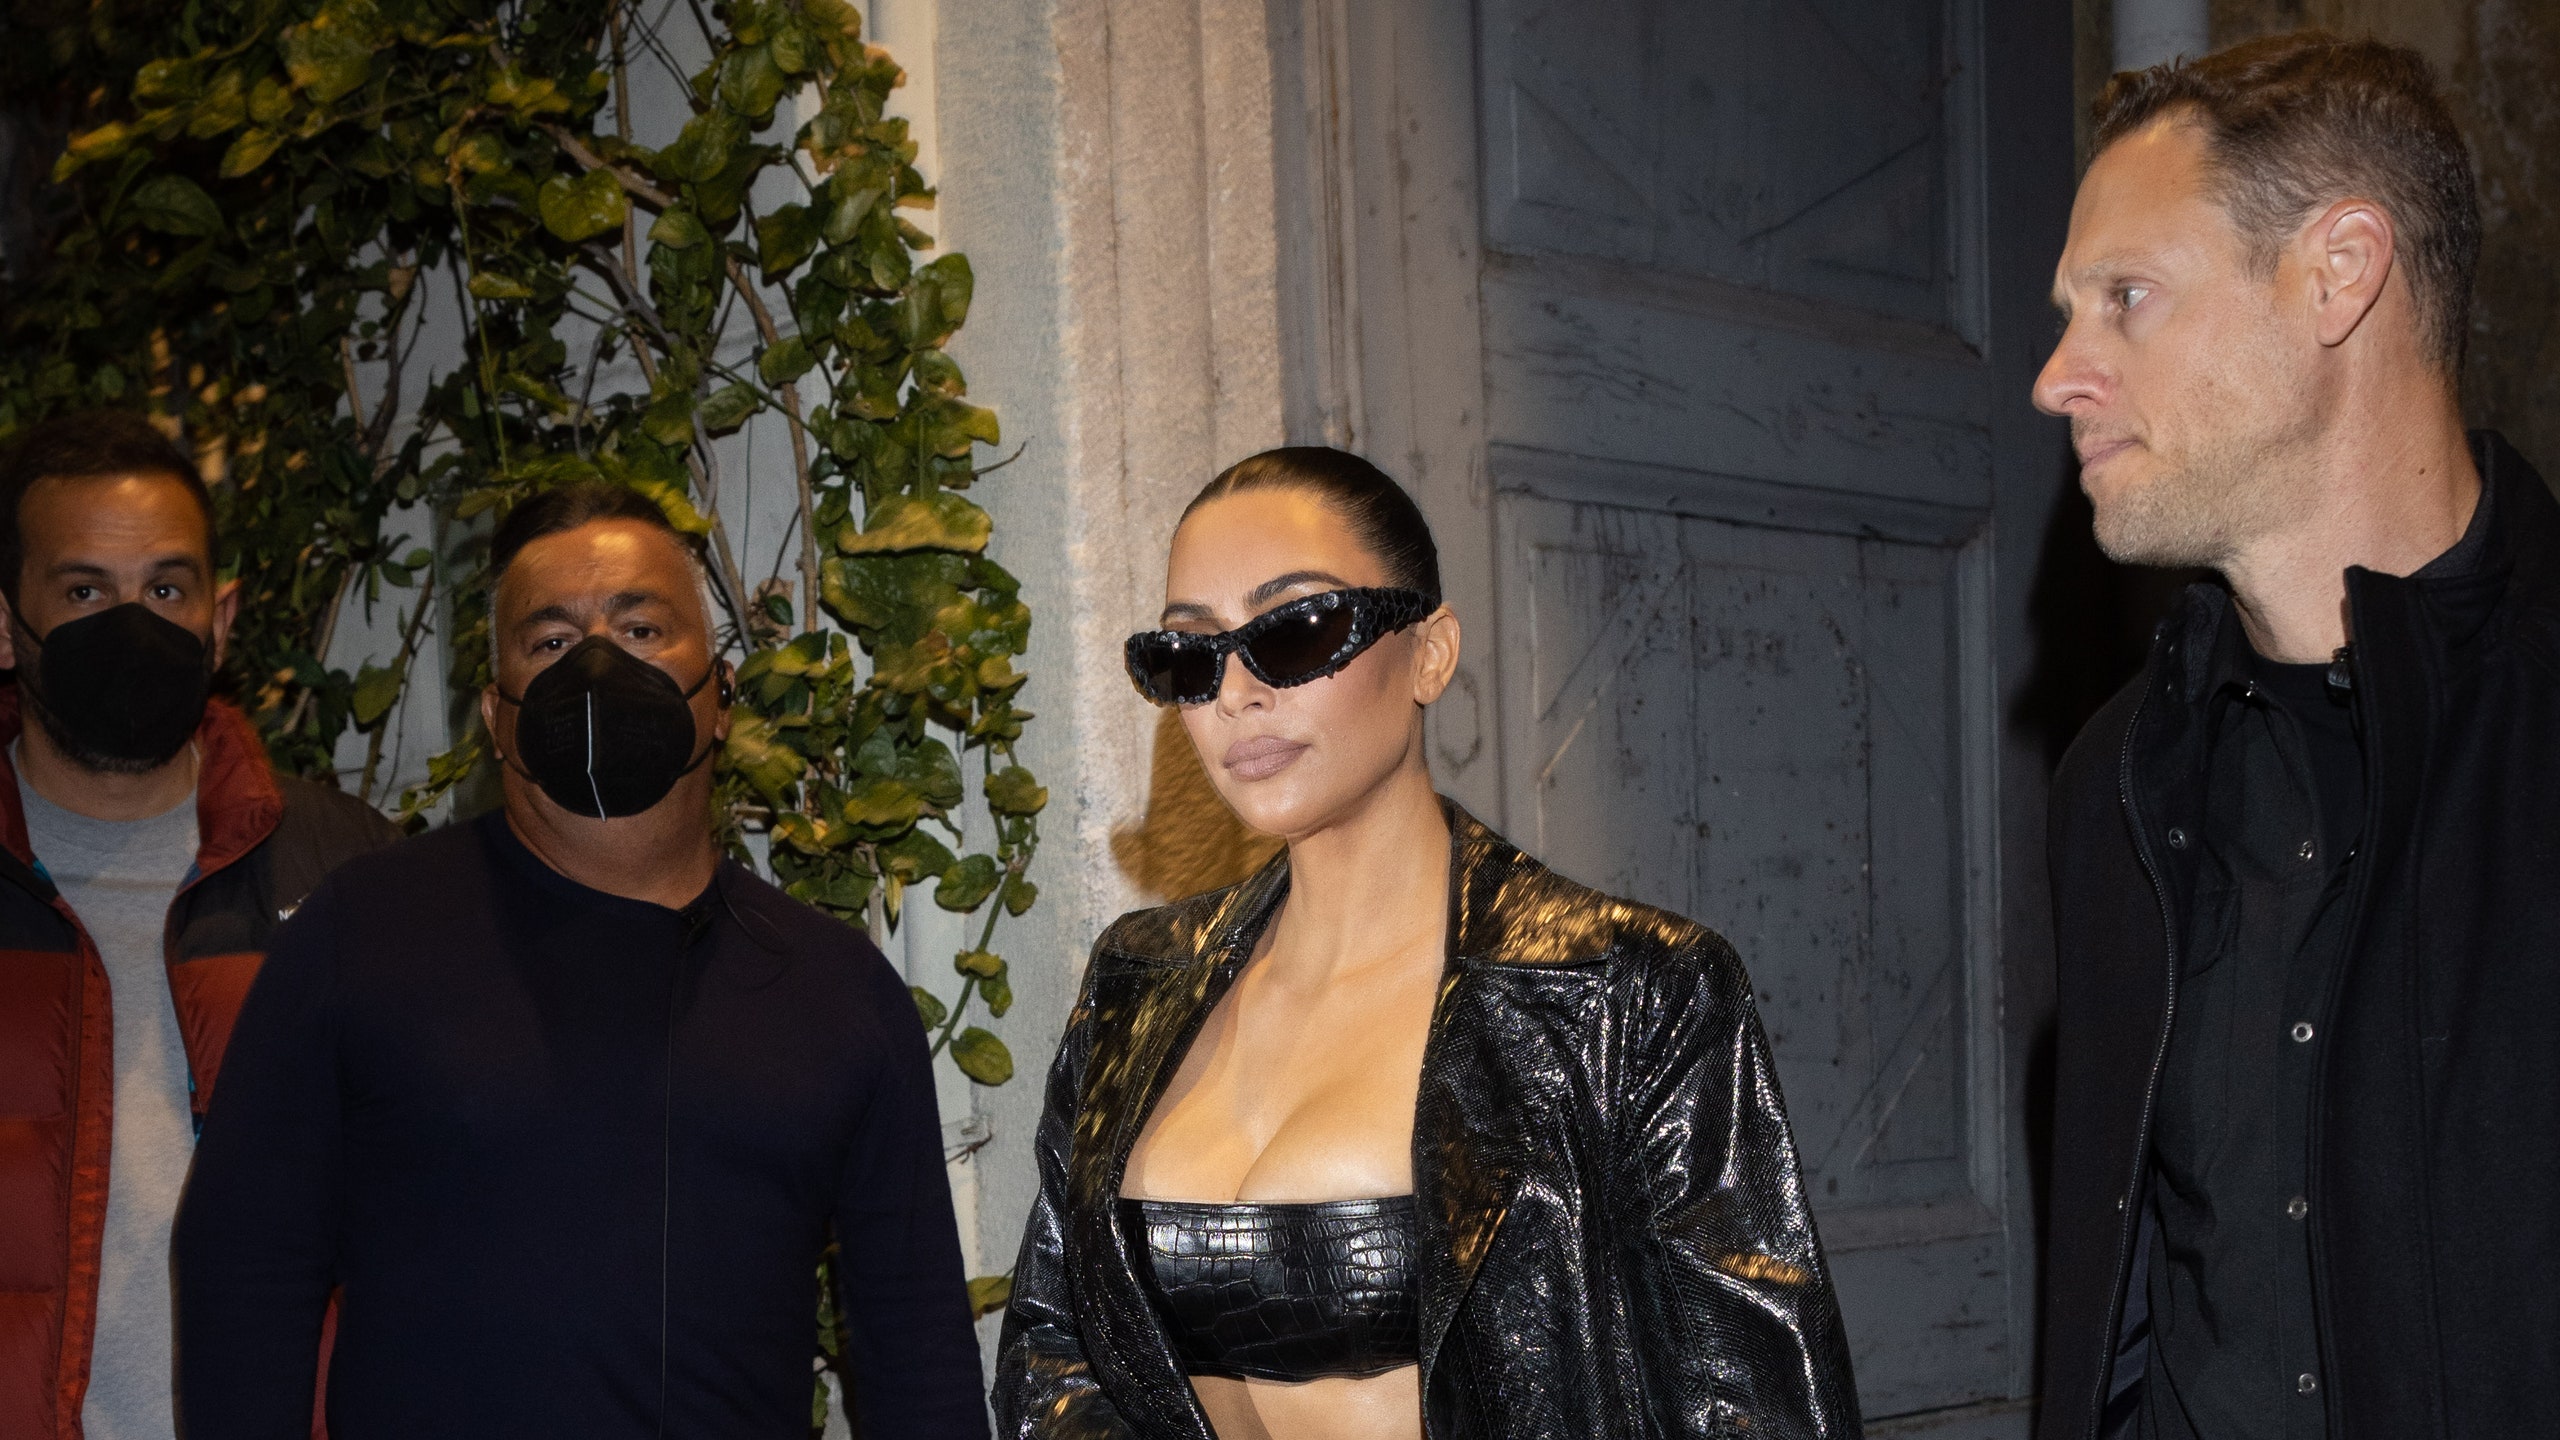 Ким Кардашьян и Джулия Фокс на Неделе моды в Милане. Обе в латексе